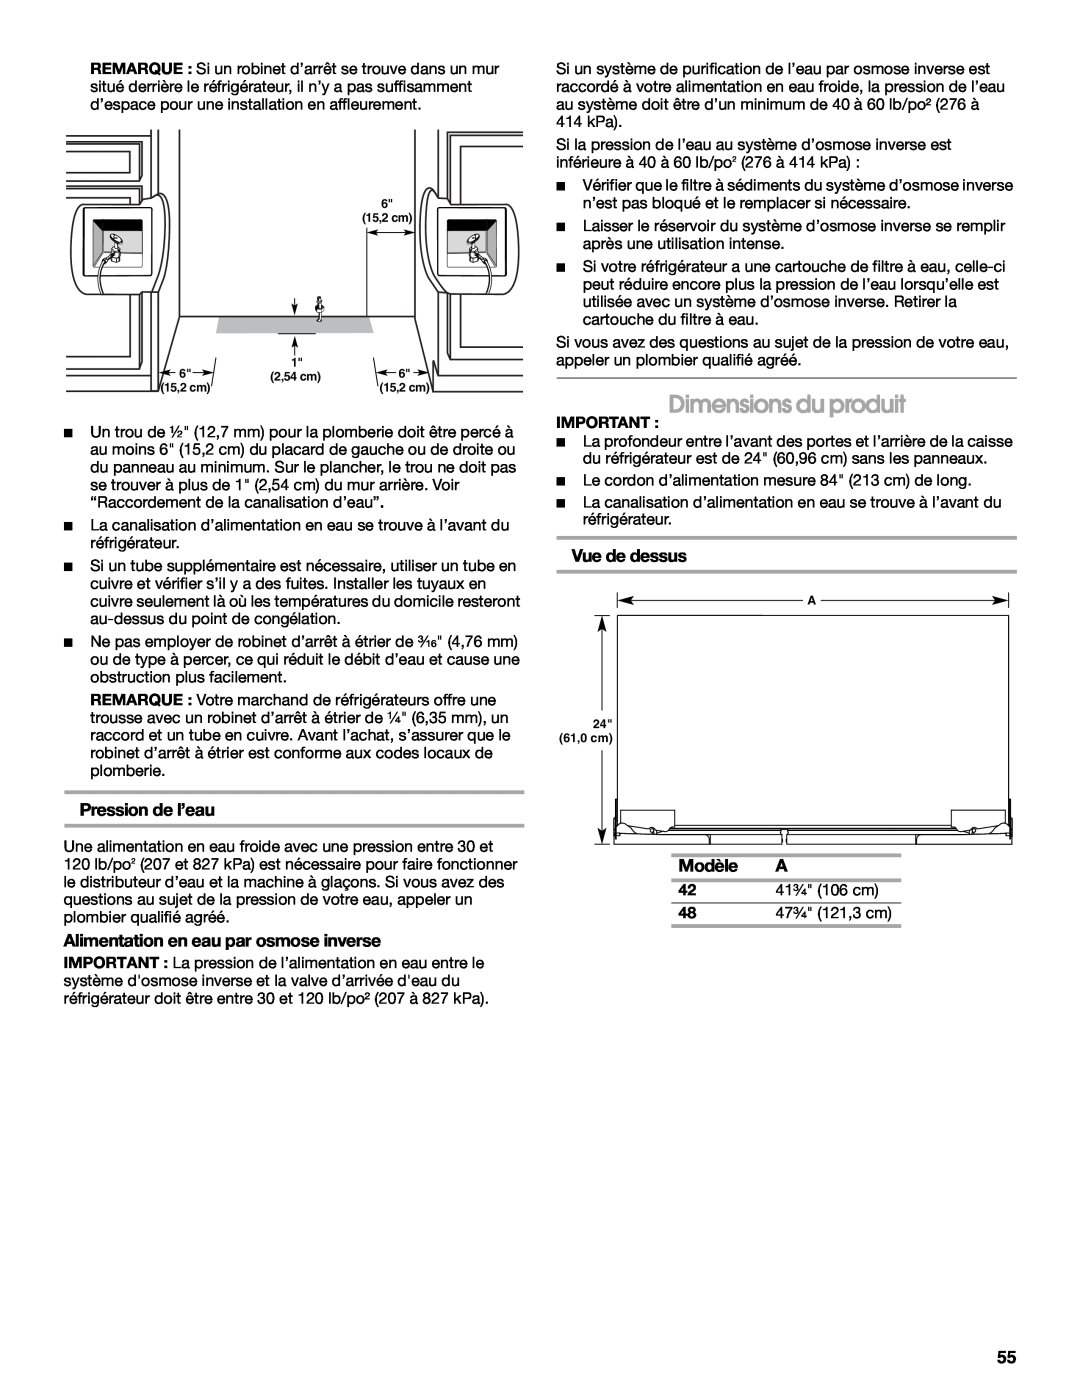 Jenn-Air W10379136B manual Dimensions du produit, Vue de dessus, Pression de l’eau, Alimentation en eau par osmose inverse 